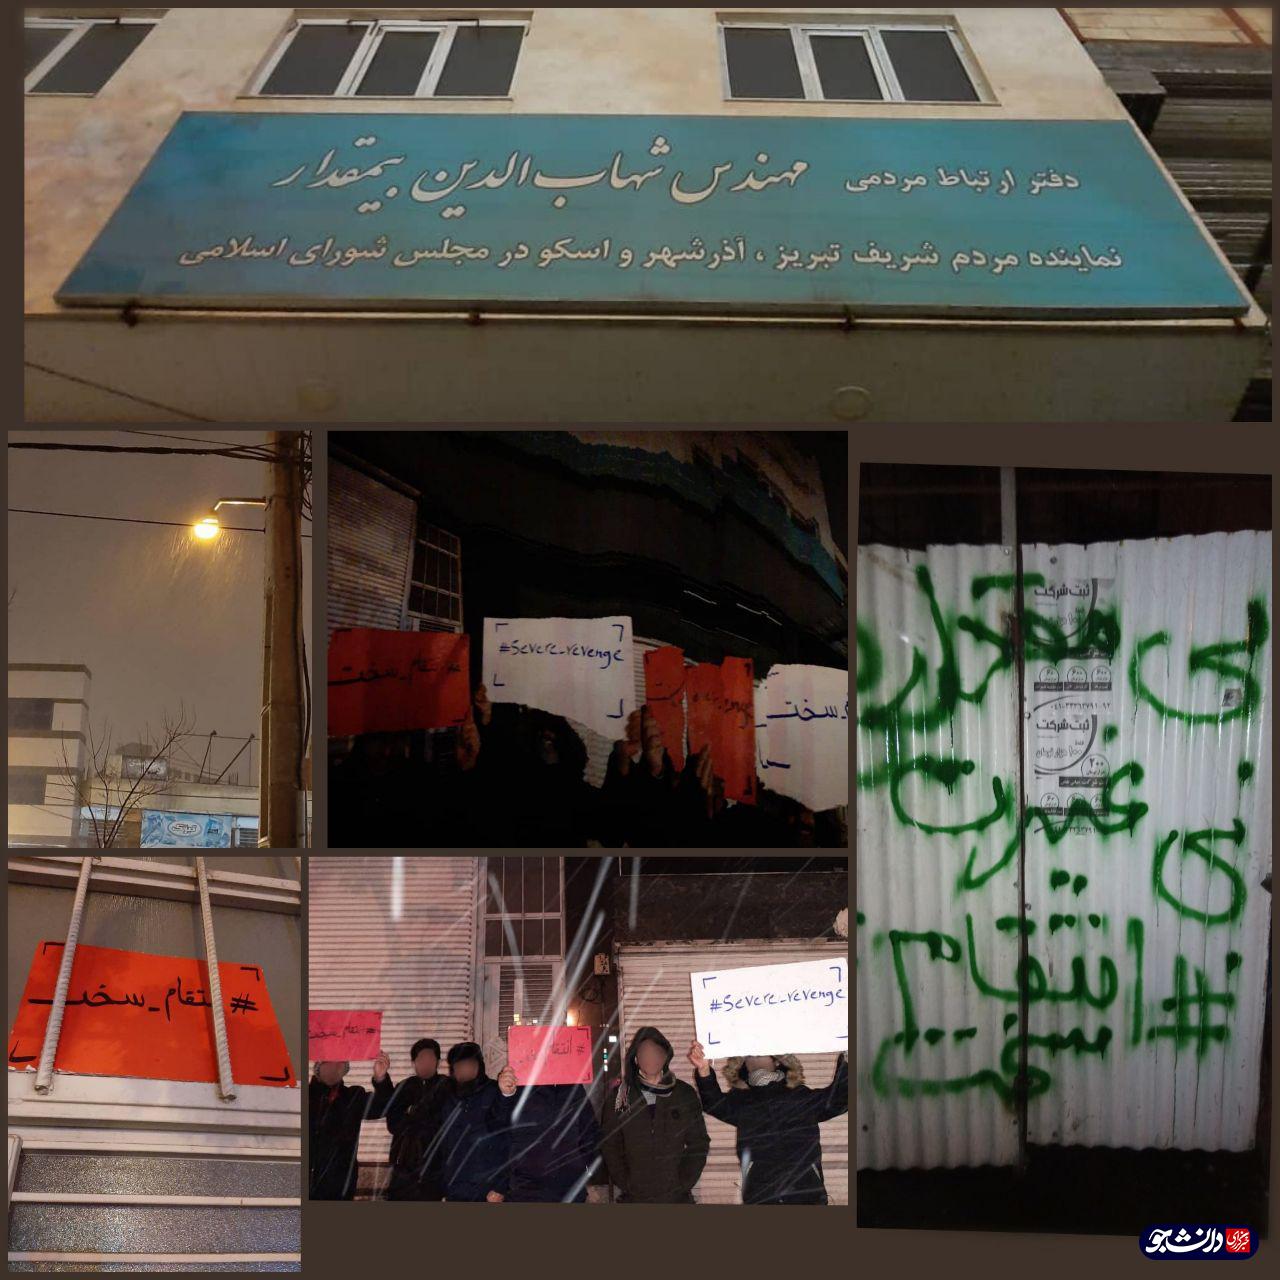 دانشجویان تبریزی در واکنش به اظهارات نماینده مردم تبریز مبنی بر مذاکره با مقابل دفتر وی تجمع کردند